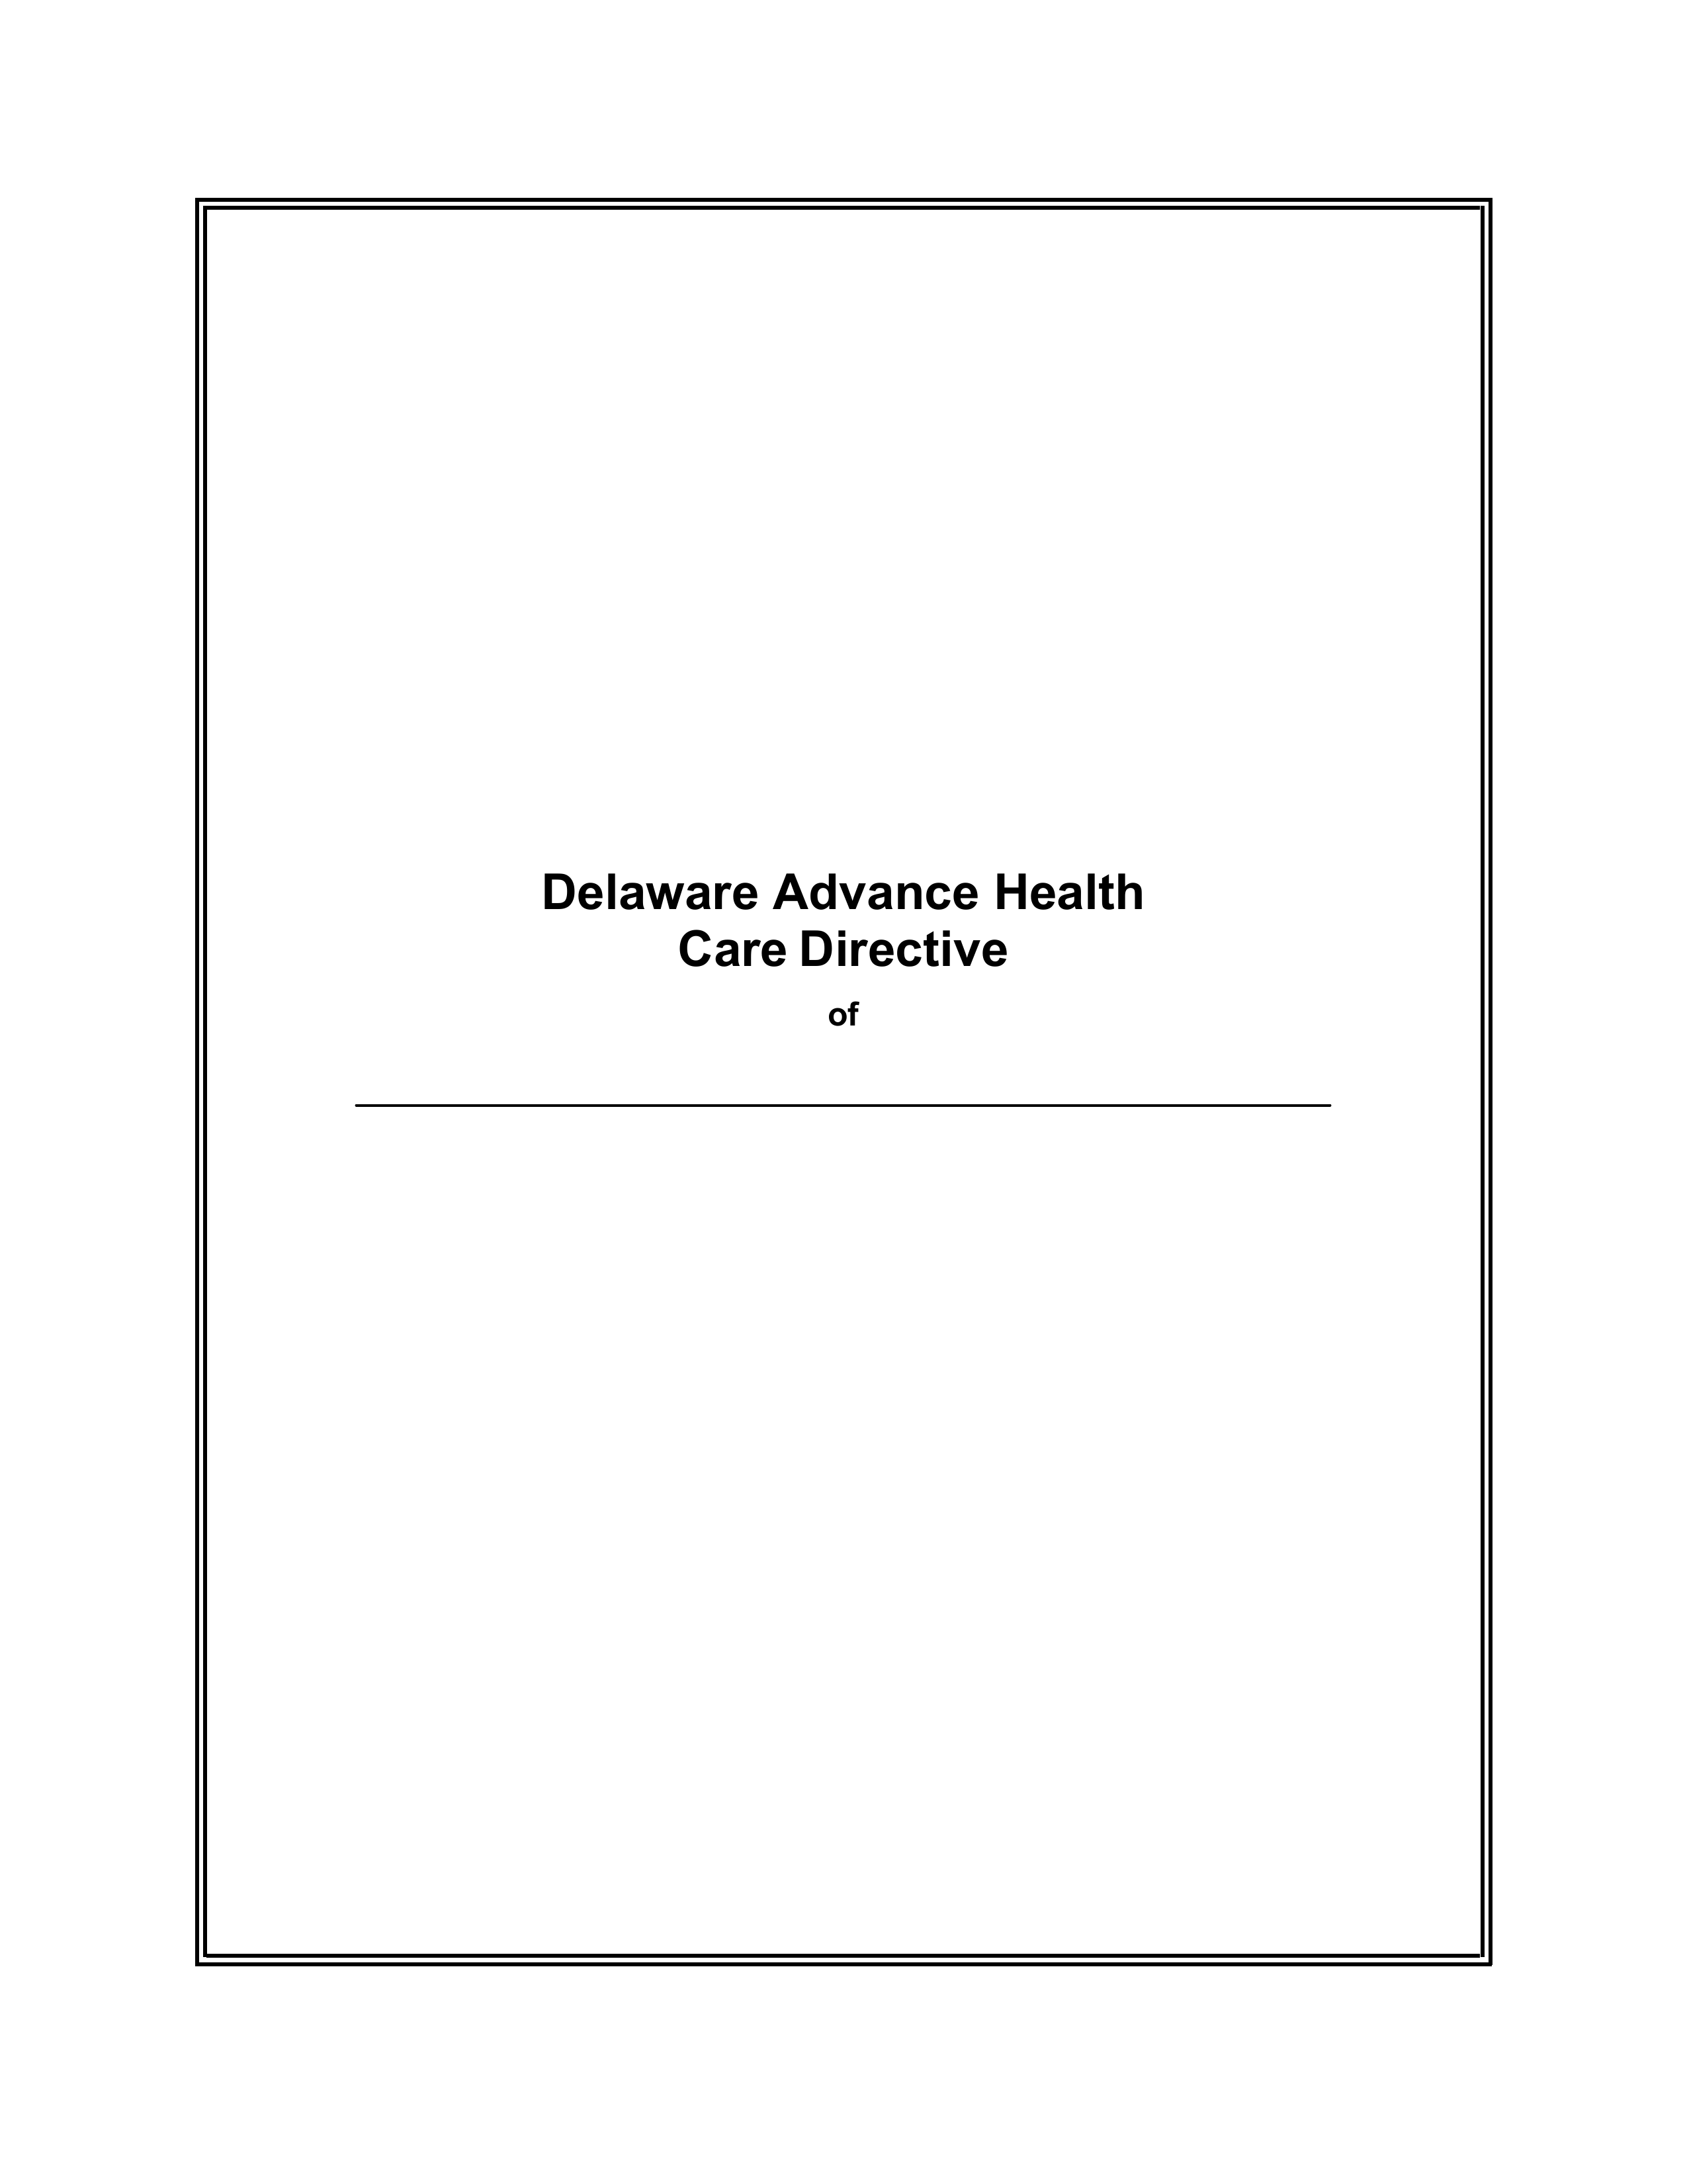 Delaware Advance Health Care Directive Form